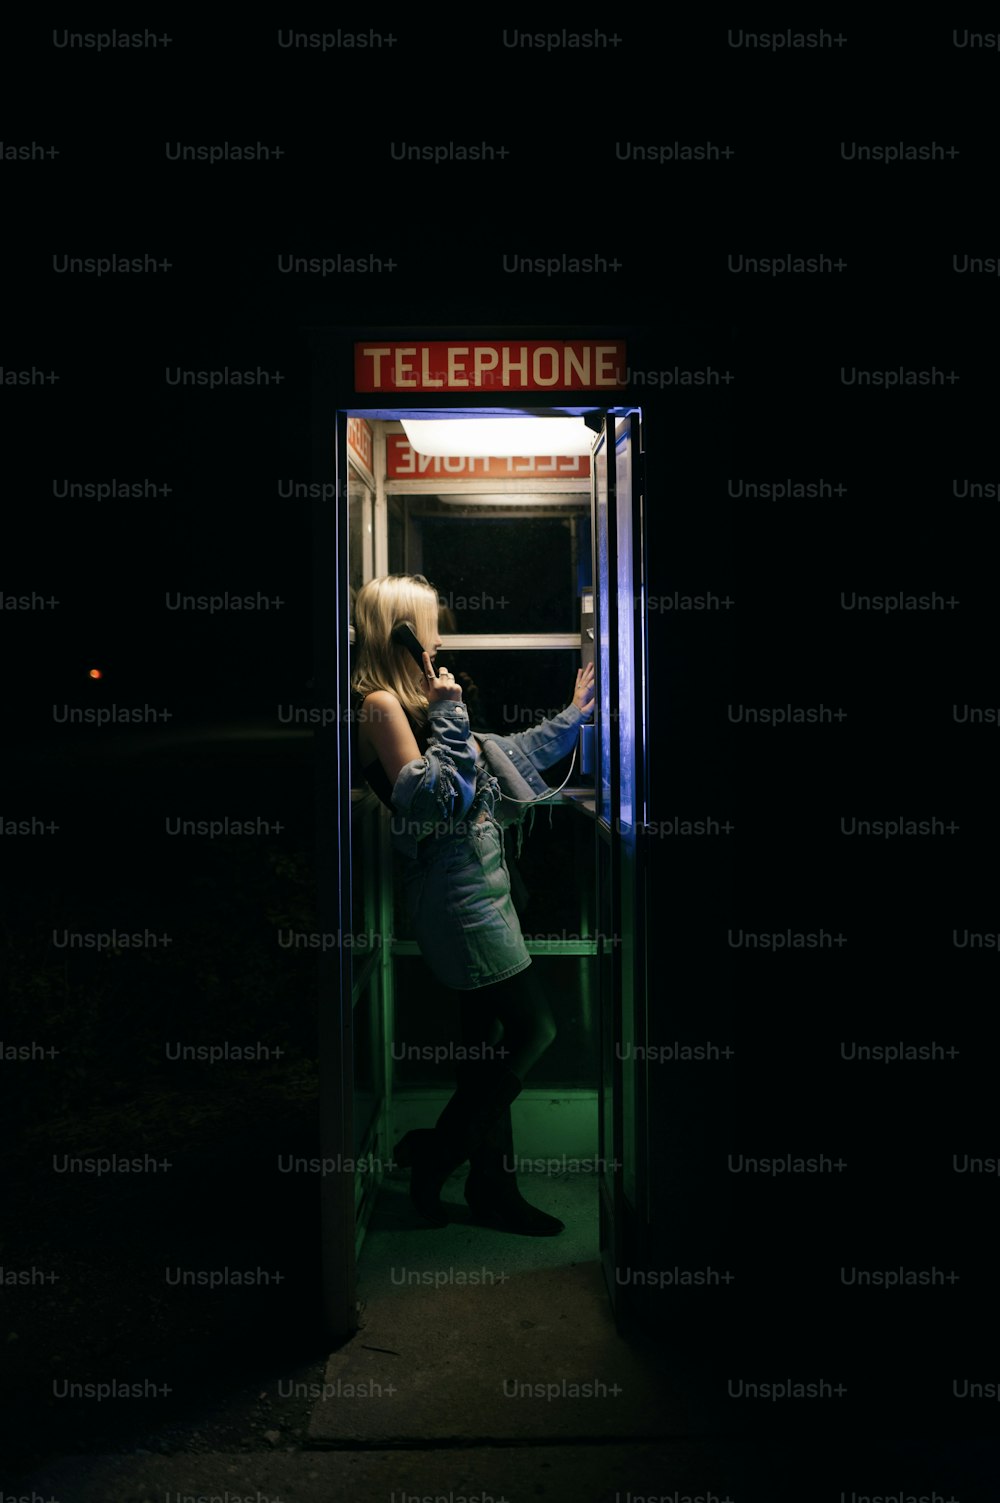 電話ボックスの前に立つ女性